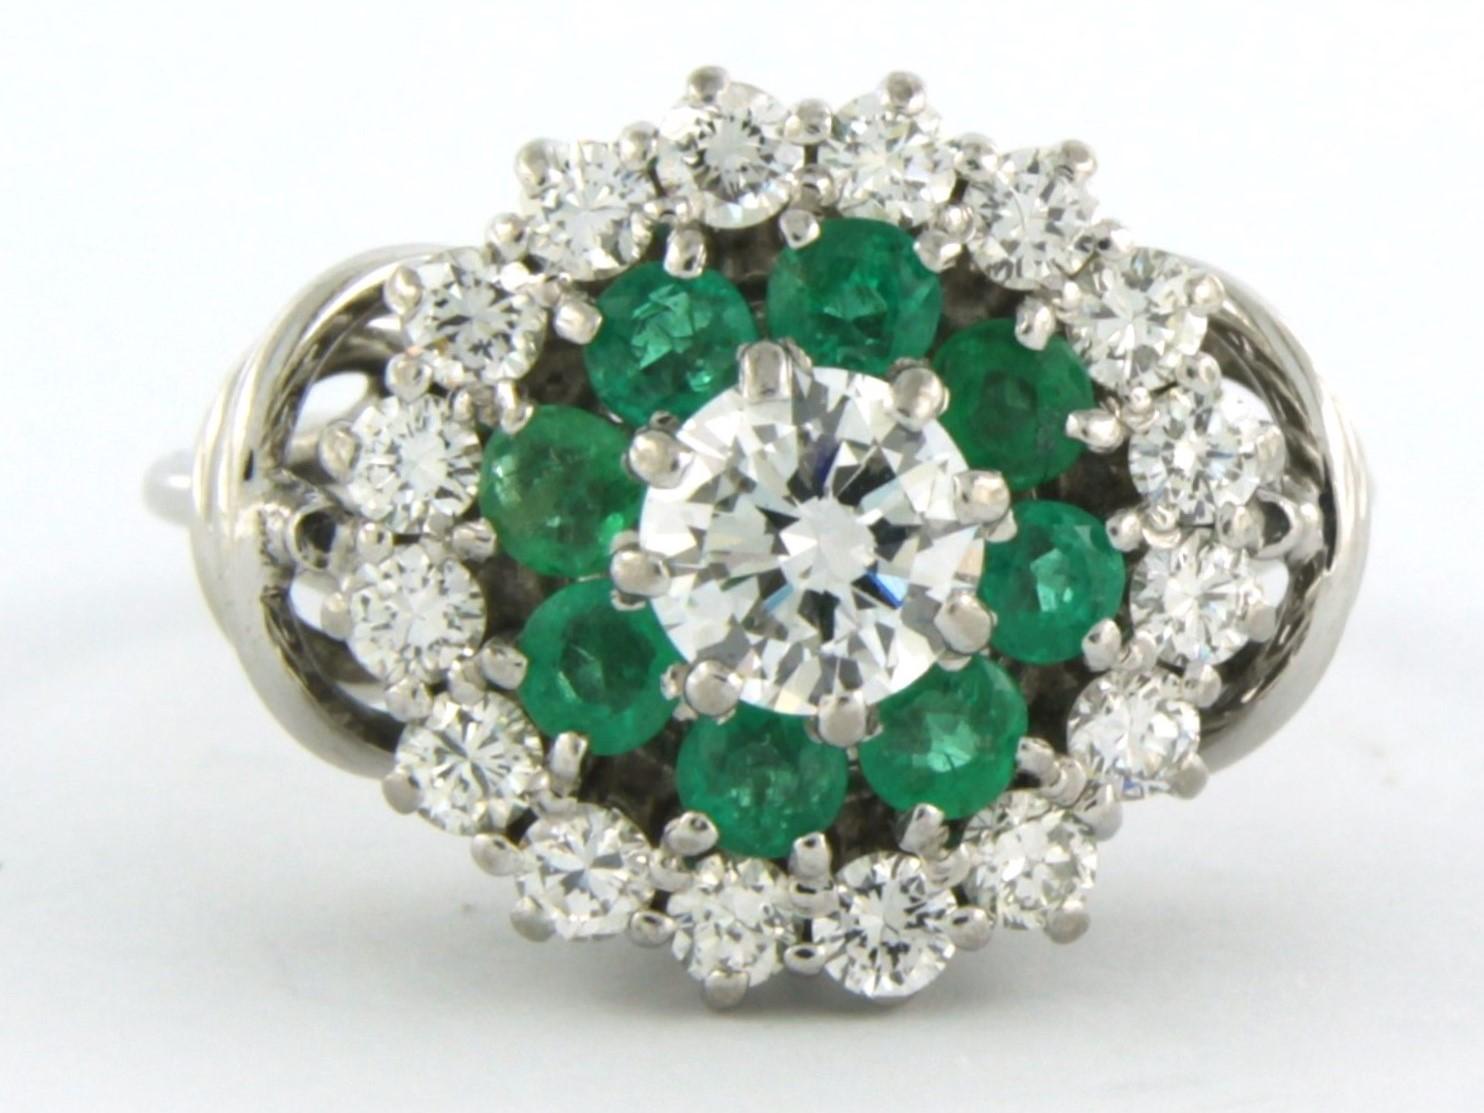 Ring aus 18 Karat Weißgold, besetzt mit einem Diamanten im Brillantschliff in der Mitte. 0,50ct - F/G - VS - und einer Entourage von Smaragd- und umliegenden Brillanten bis zu. 1.00ct - F/G - VS/SI - Ringgröße U.S. 5.25 - EU. 15(50)

detaillierte